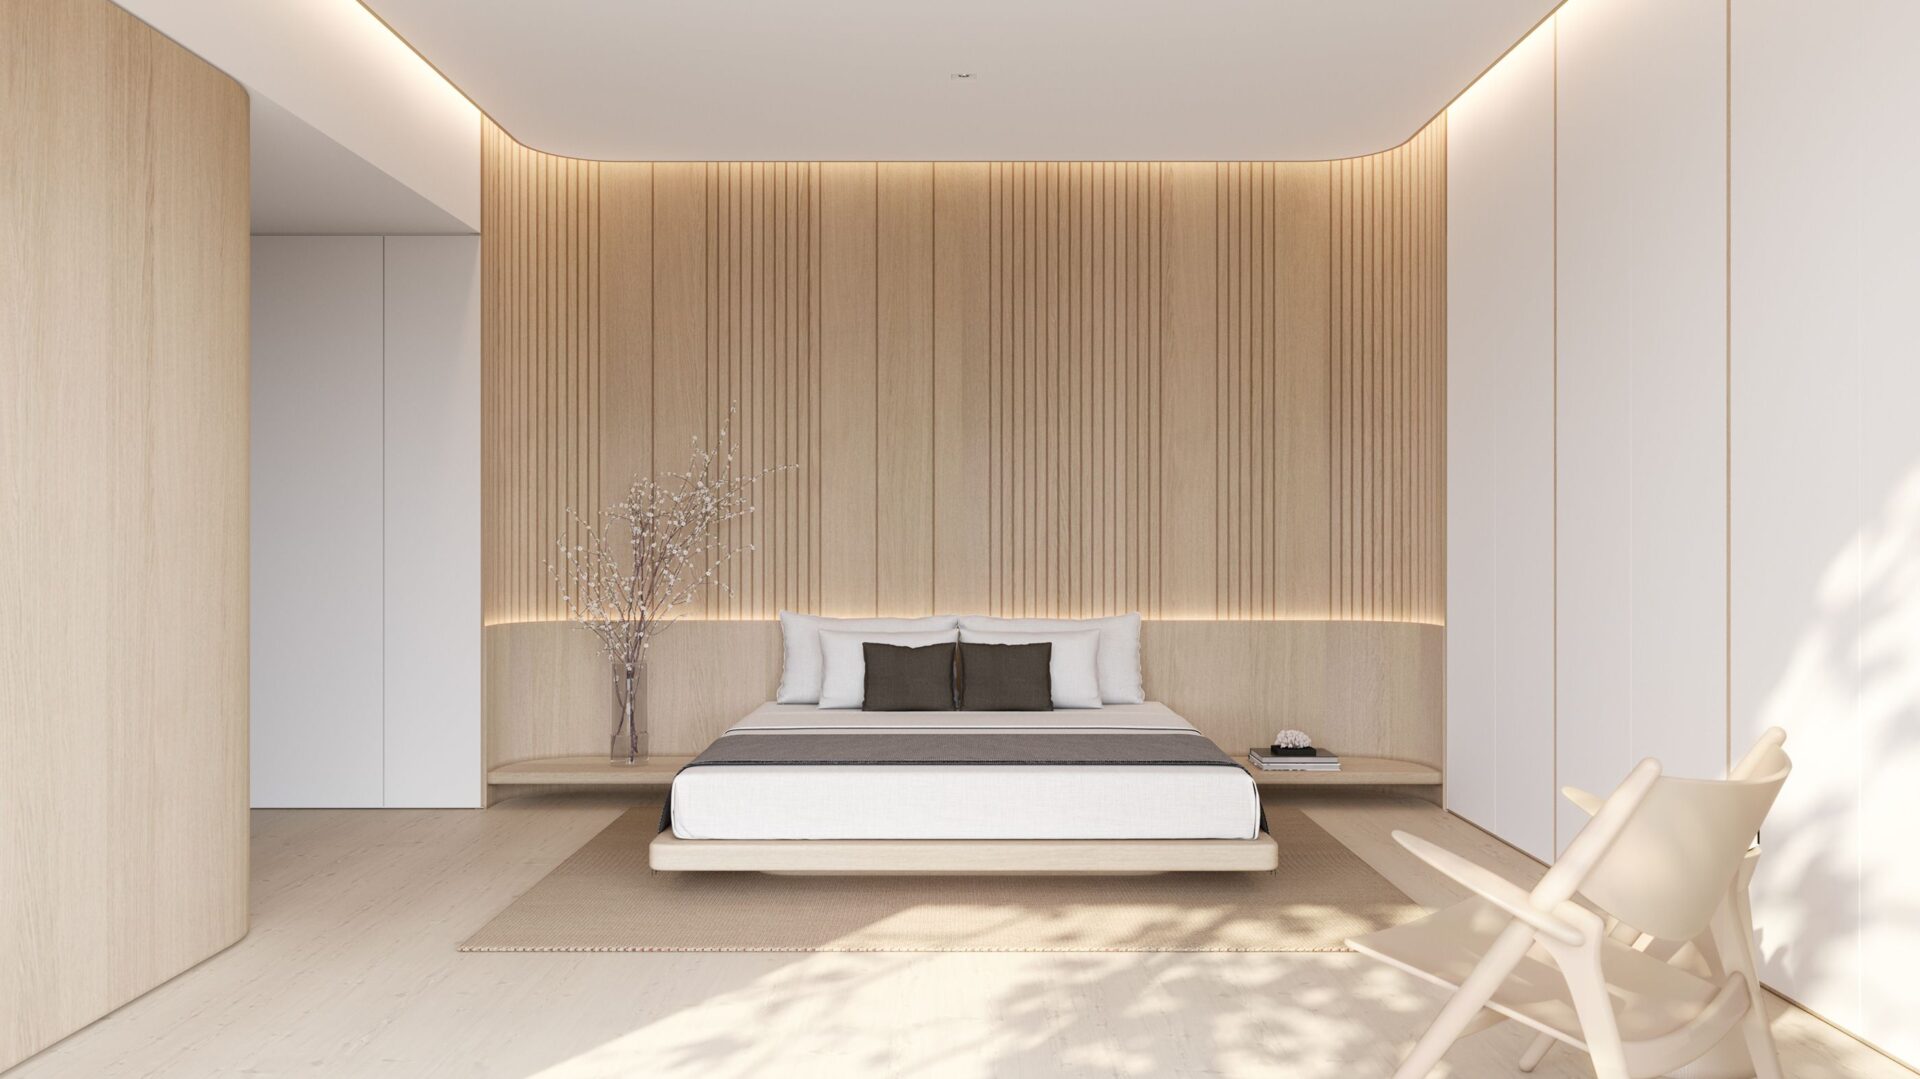 Thiết kế nội thất khách sạn theo phong cách tối giản